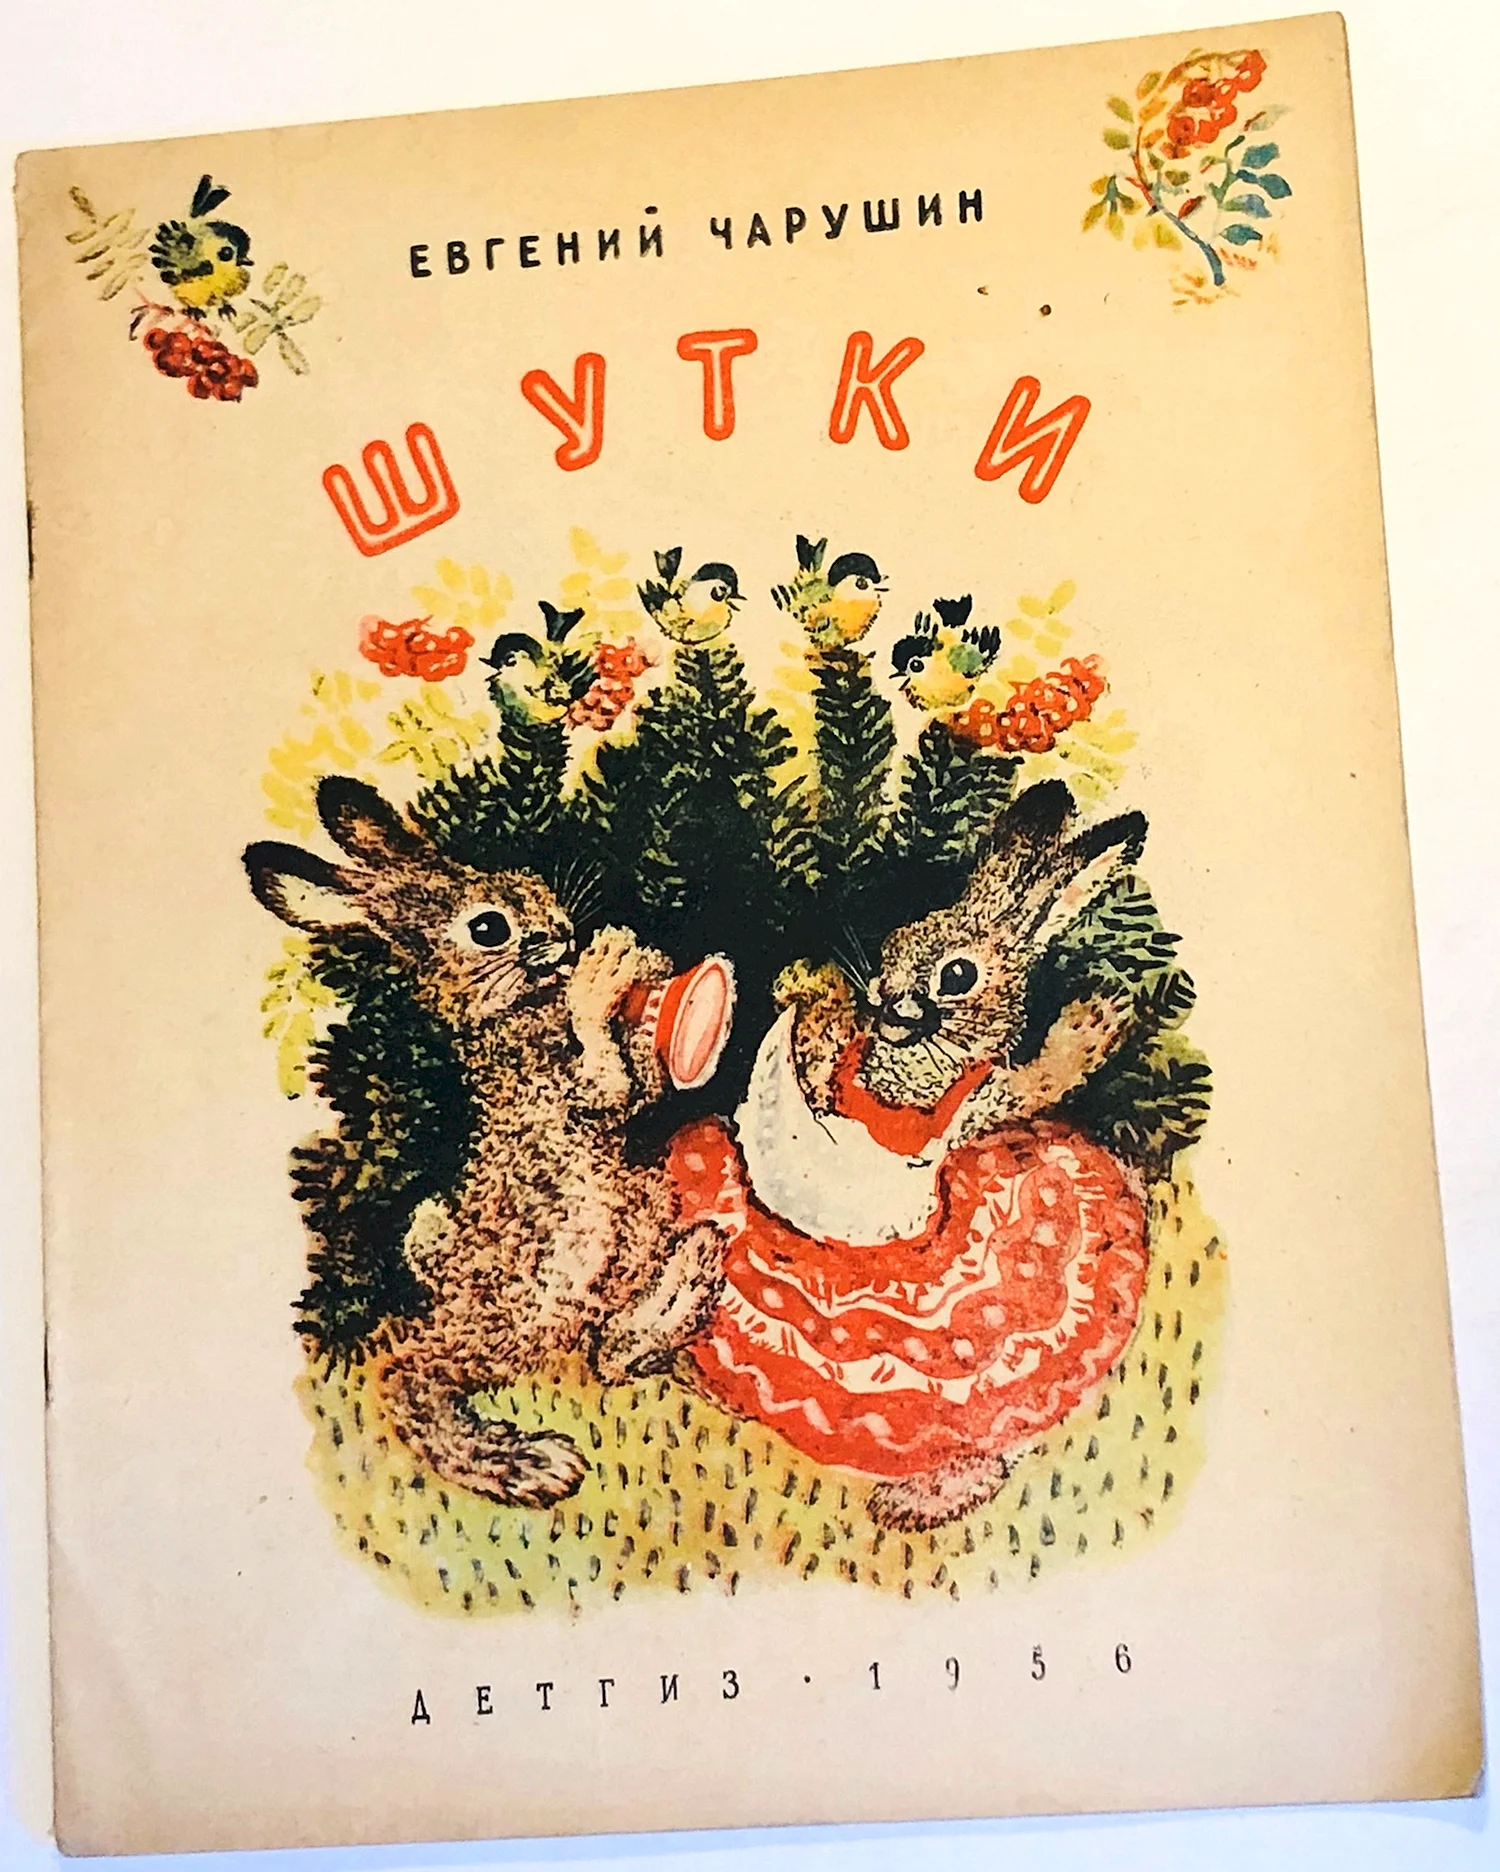 Евгений Иванович Чарушин иллюстрации к книгам